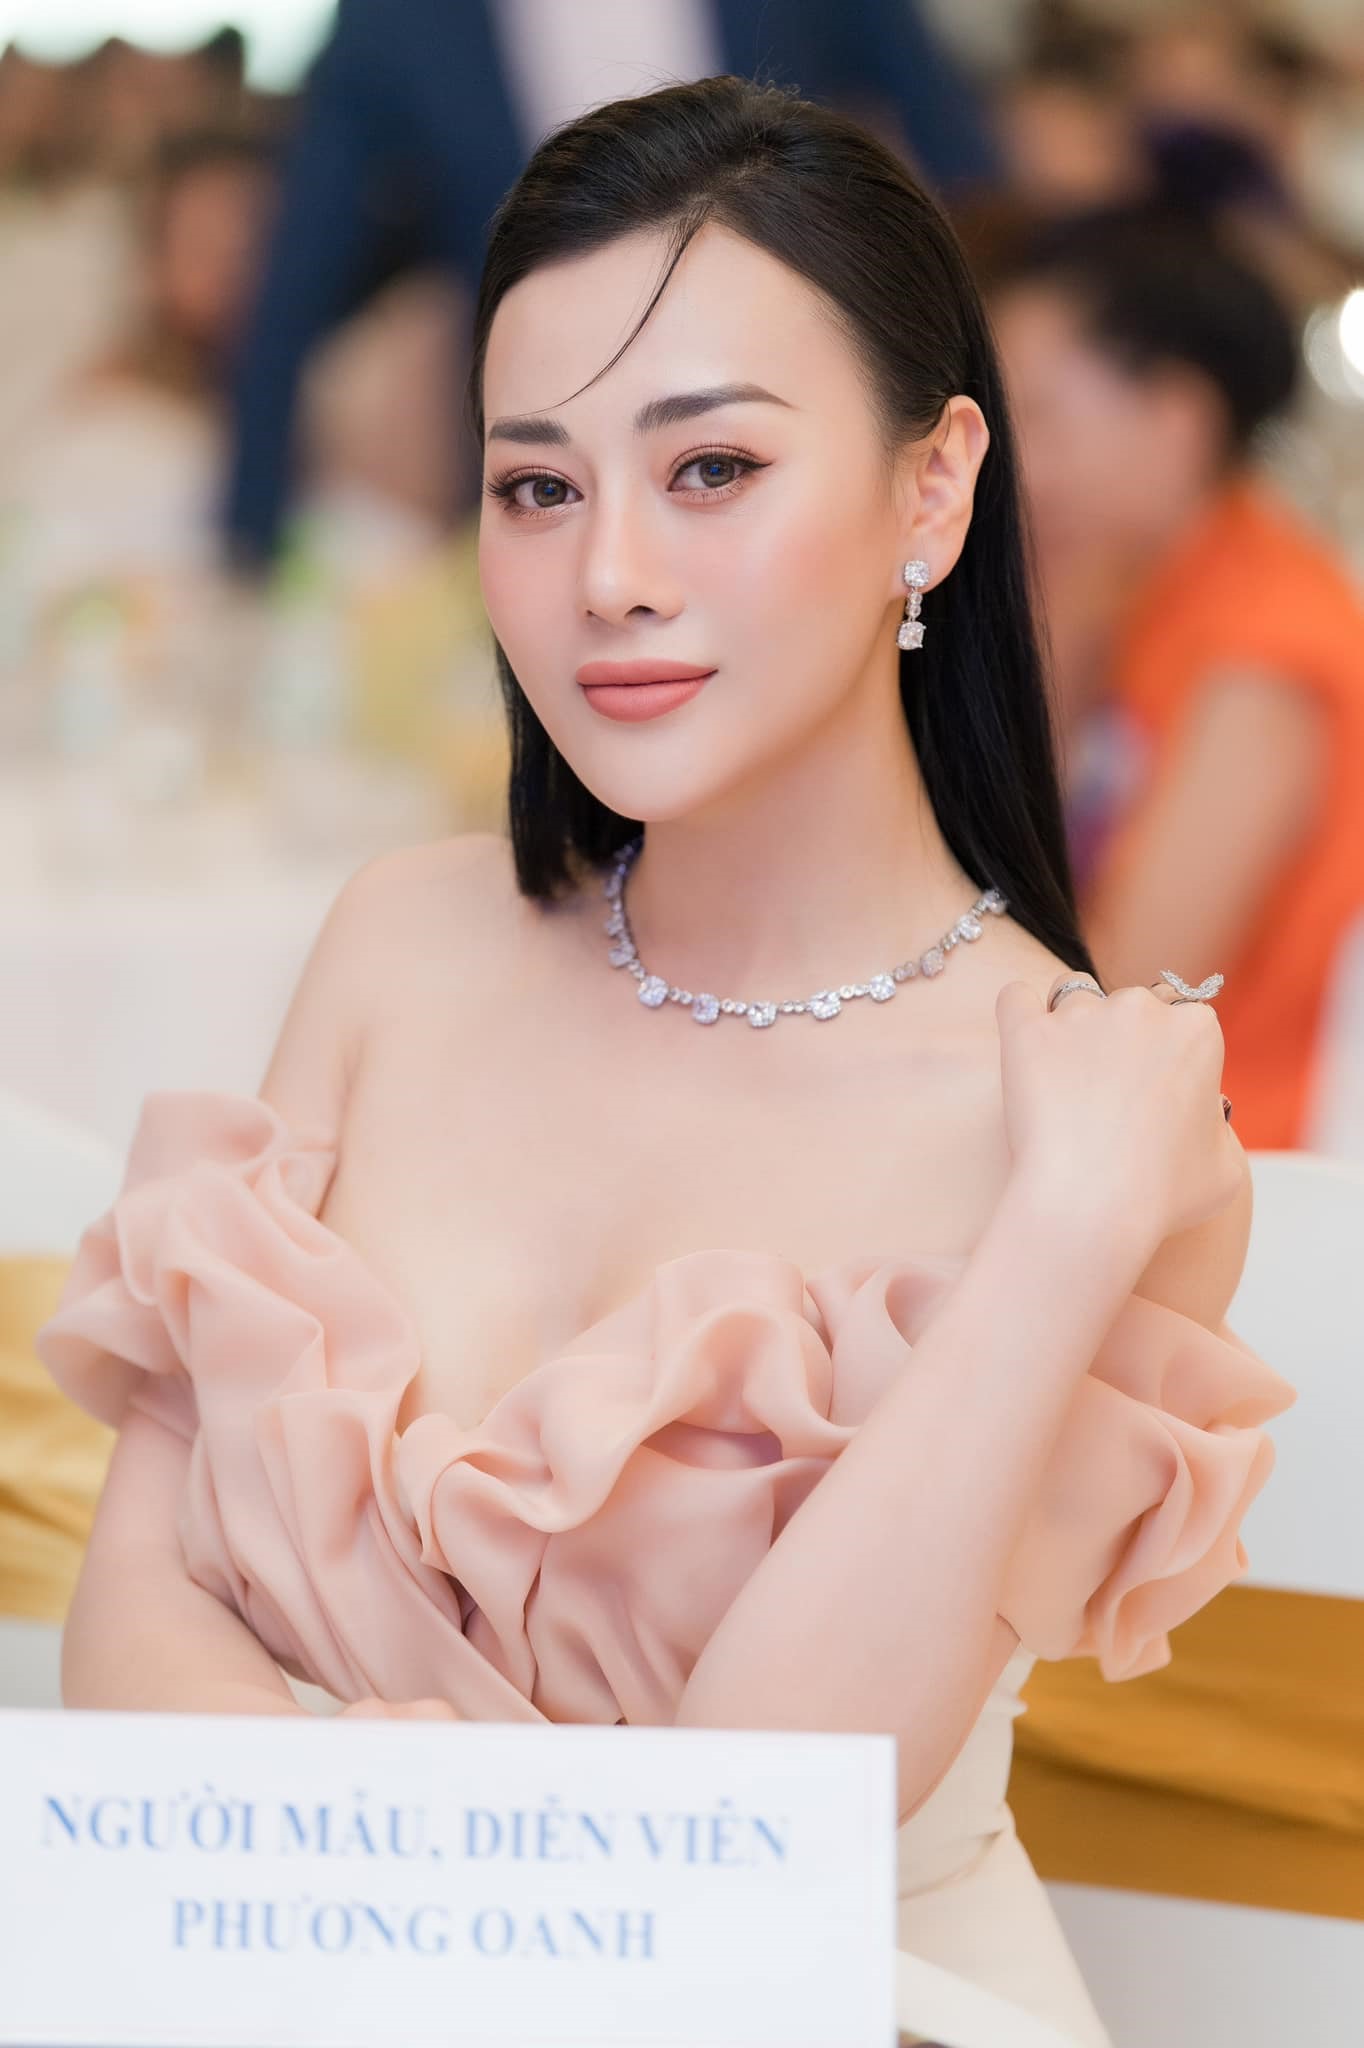 Ở độ tuổi ngoài 30, Phương Oanh vẫn luôn trẻ trung, quyến rũ. Người đẹp không để lộ bất cứ dấu hiệu tuổi tác nào, thậm chí là còn xinh đẹp mặn mà hơn trước.